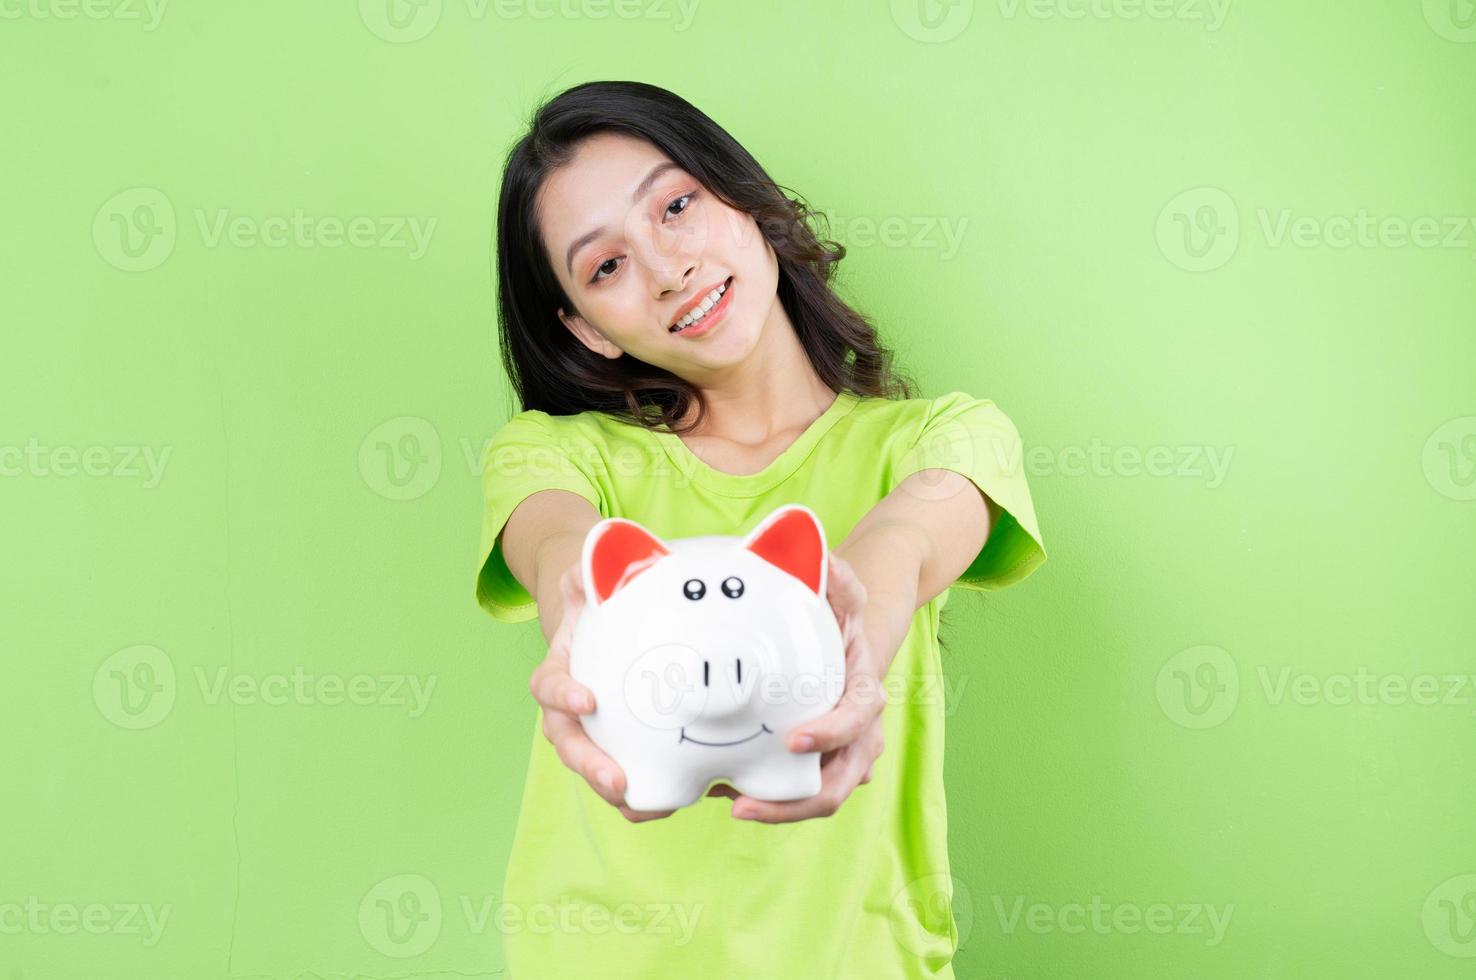 asiatisches mädchen, das sparschwein in der hand hält, geldsparkonzept foto